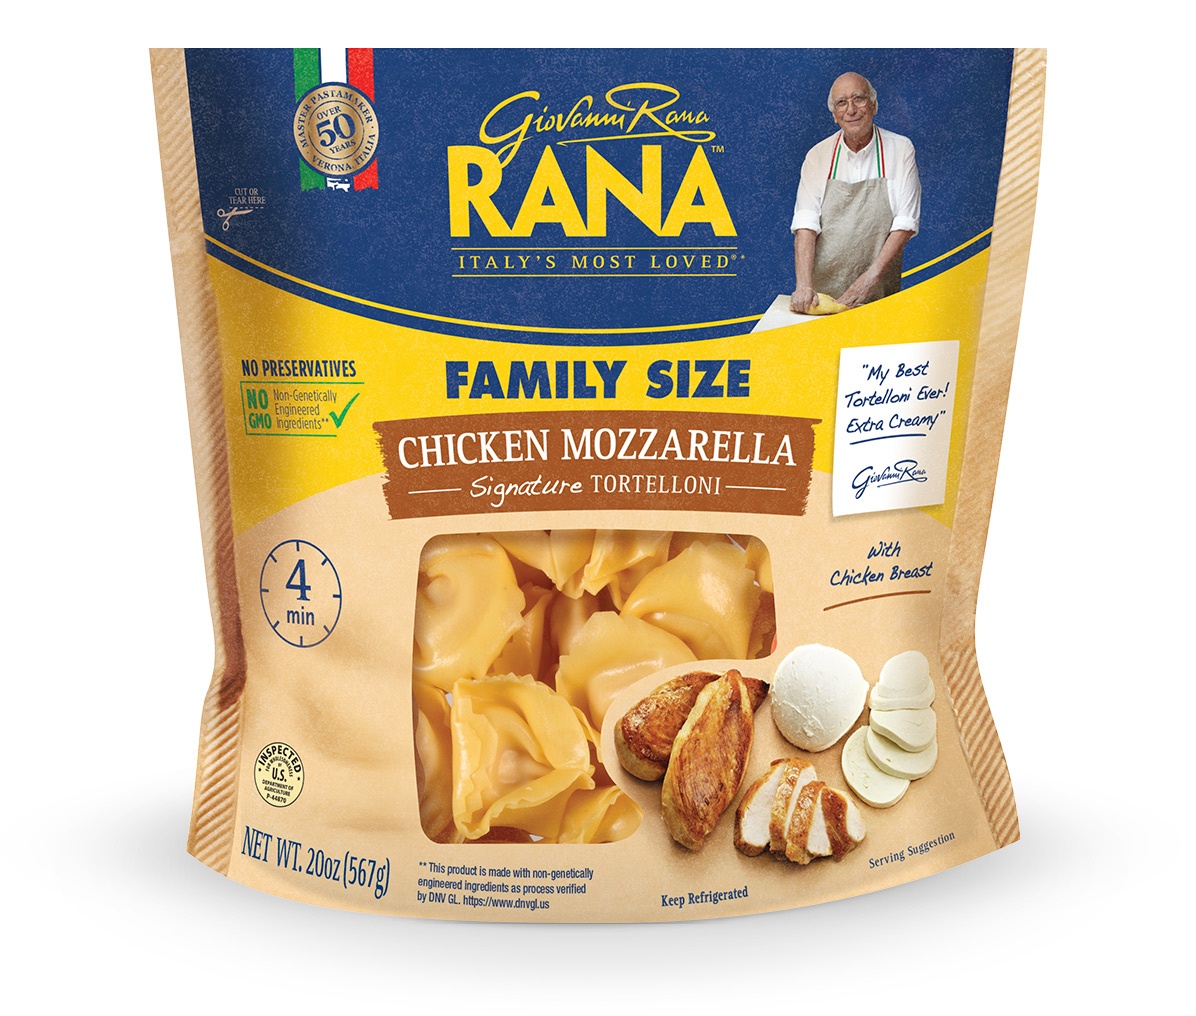 Pasta Day - GioVanni Roma Rana Chicken Mozzerella Tortelloni